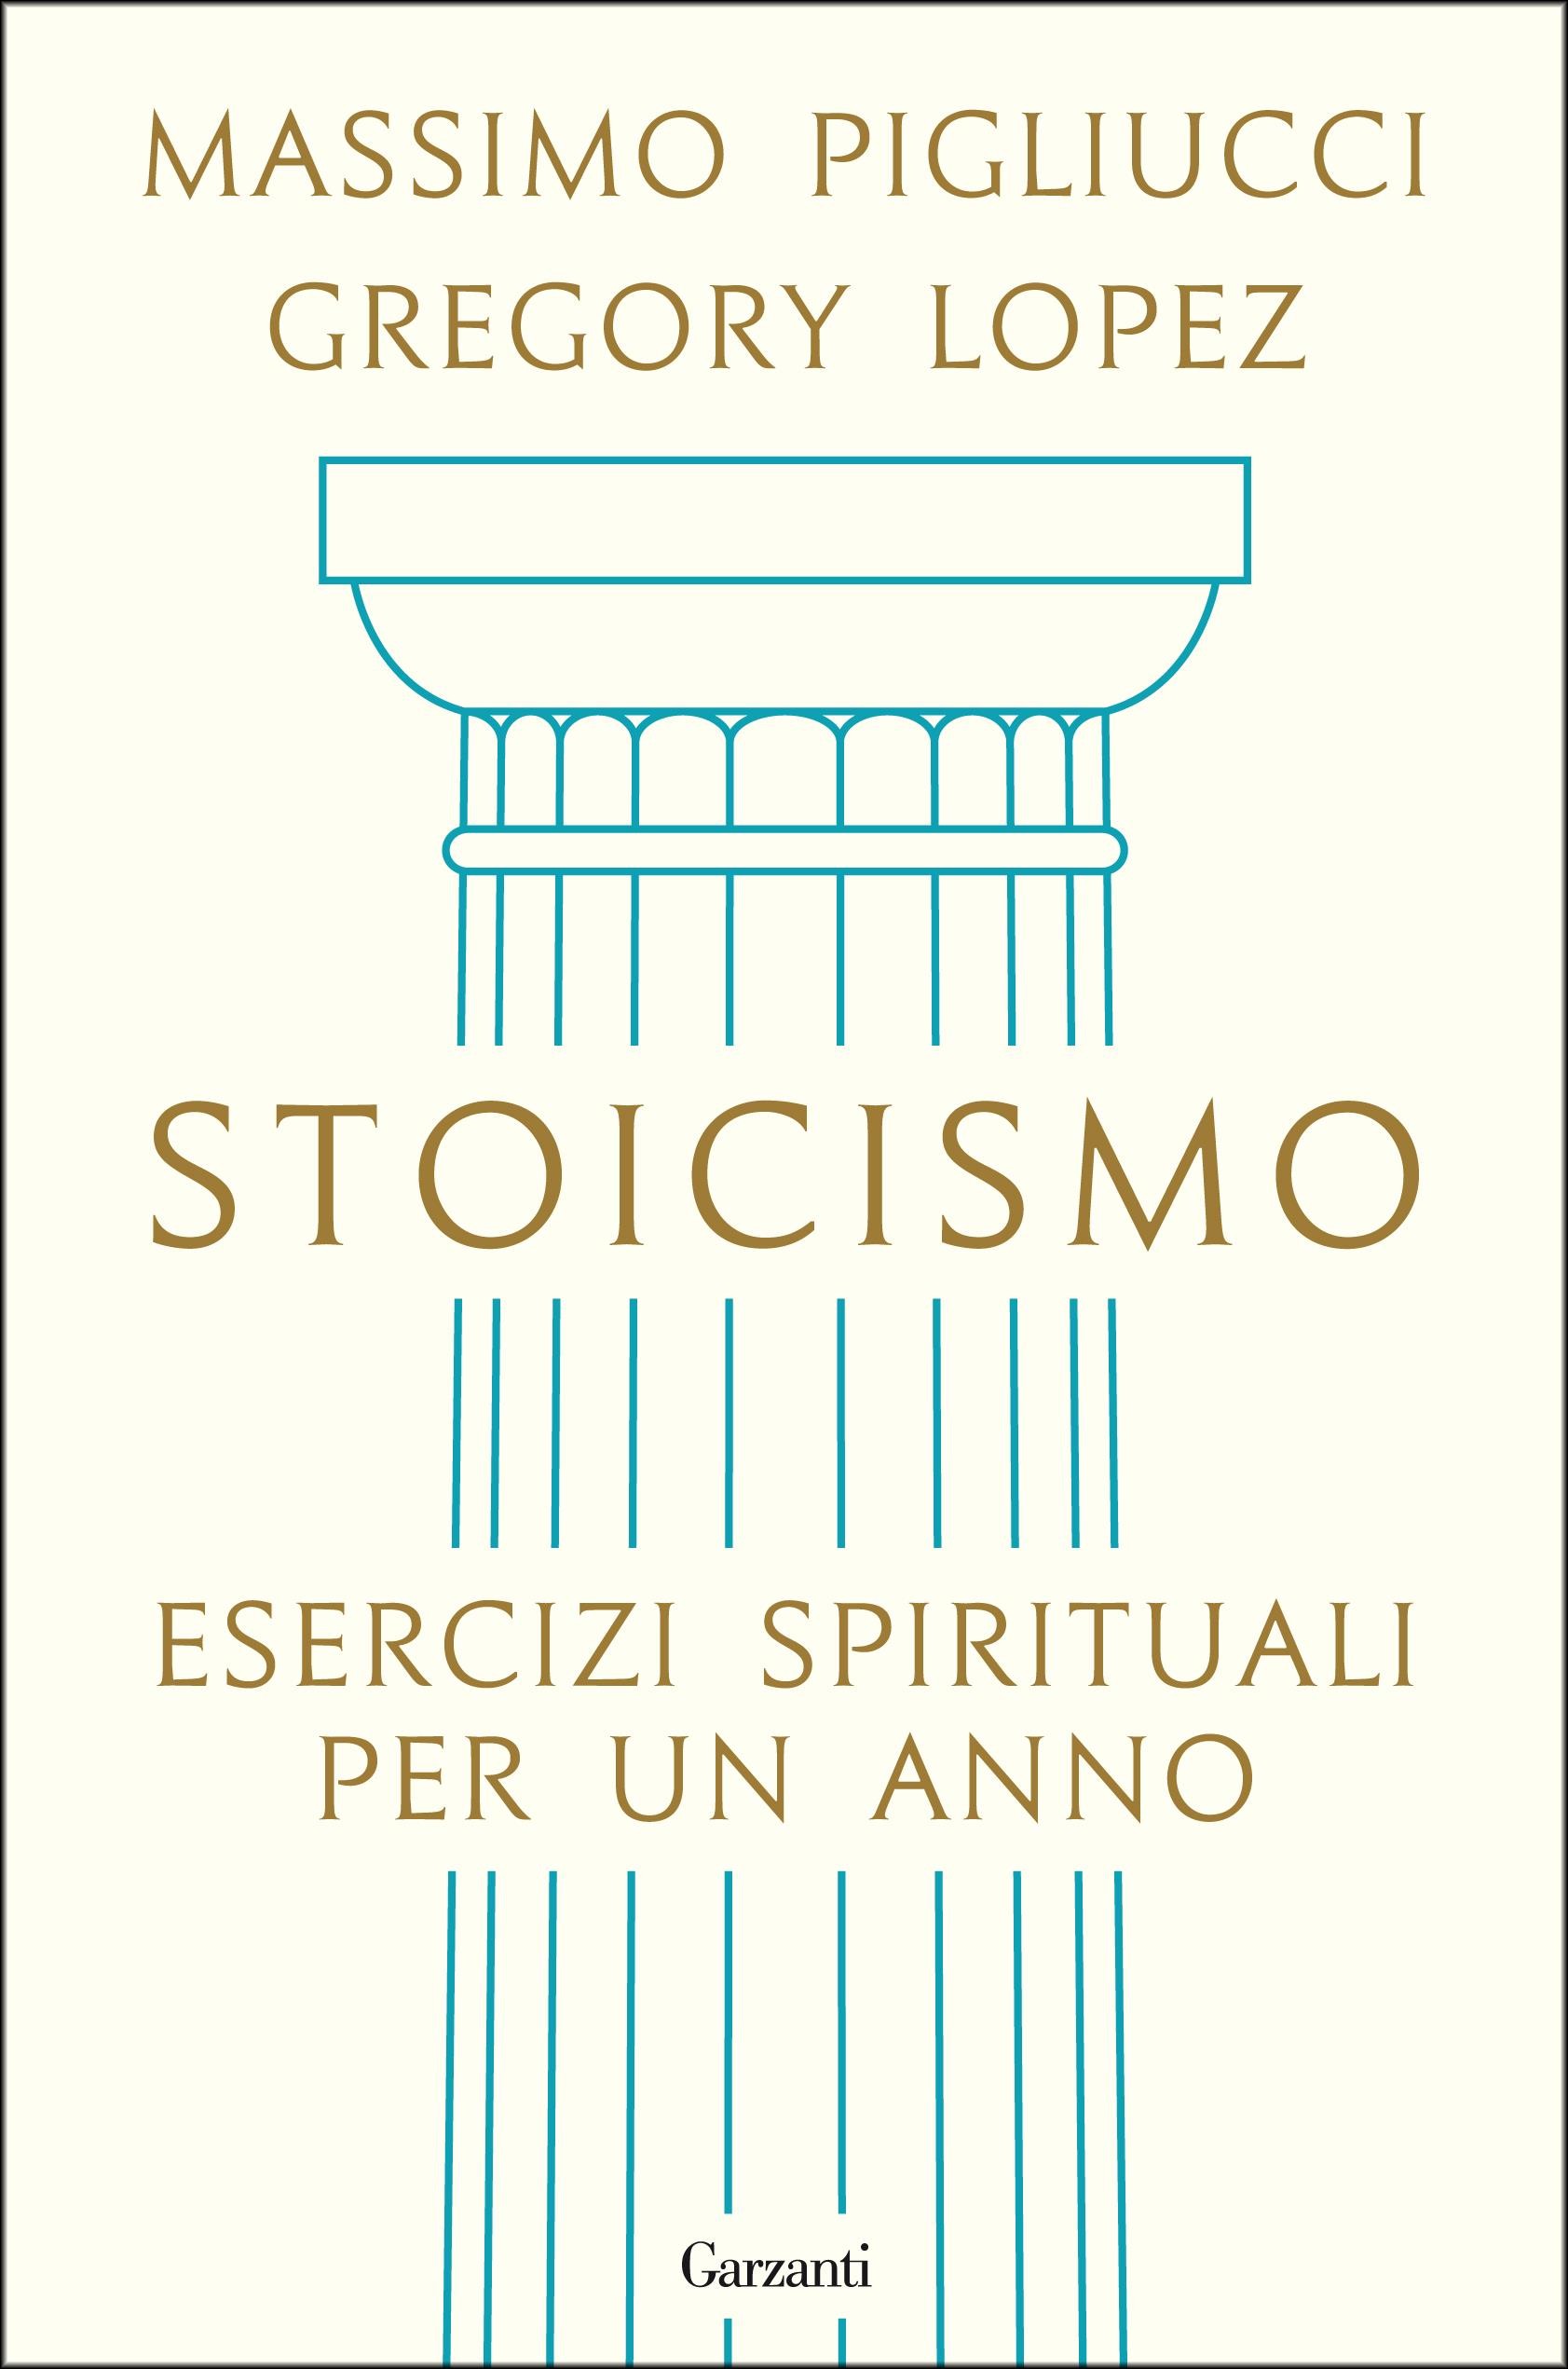 Stoicismo - Librerie.coop